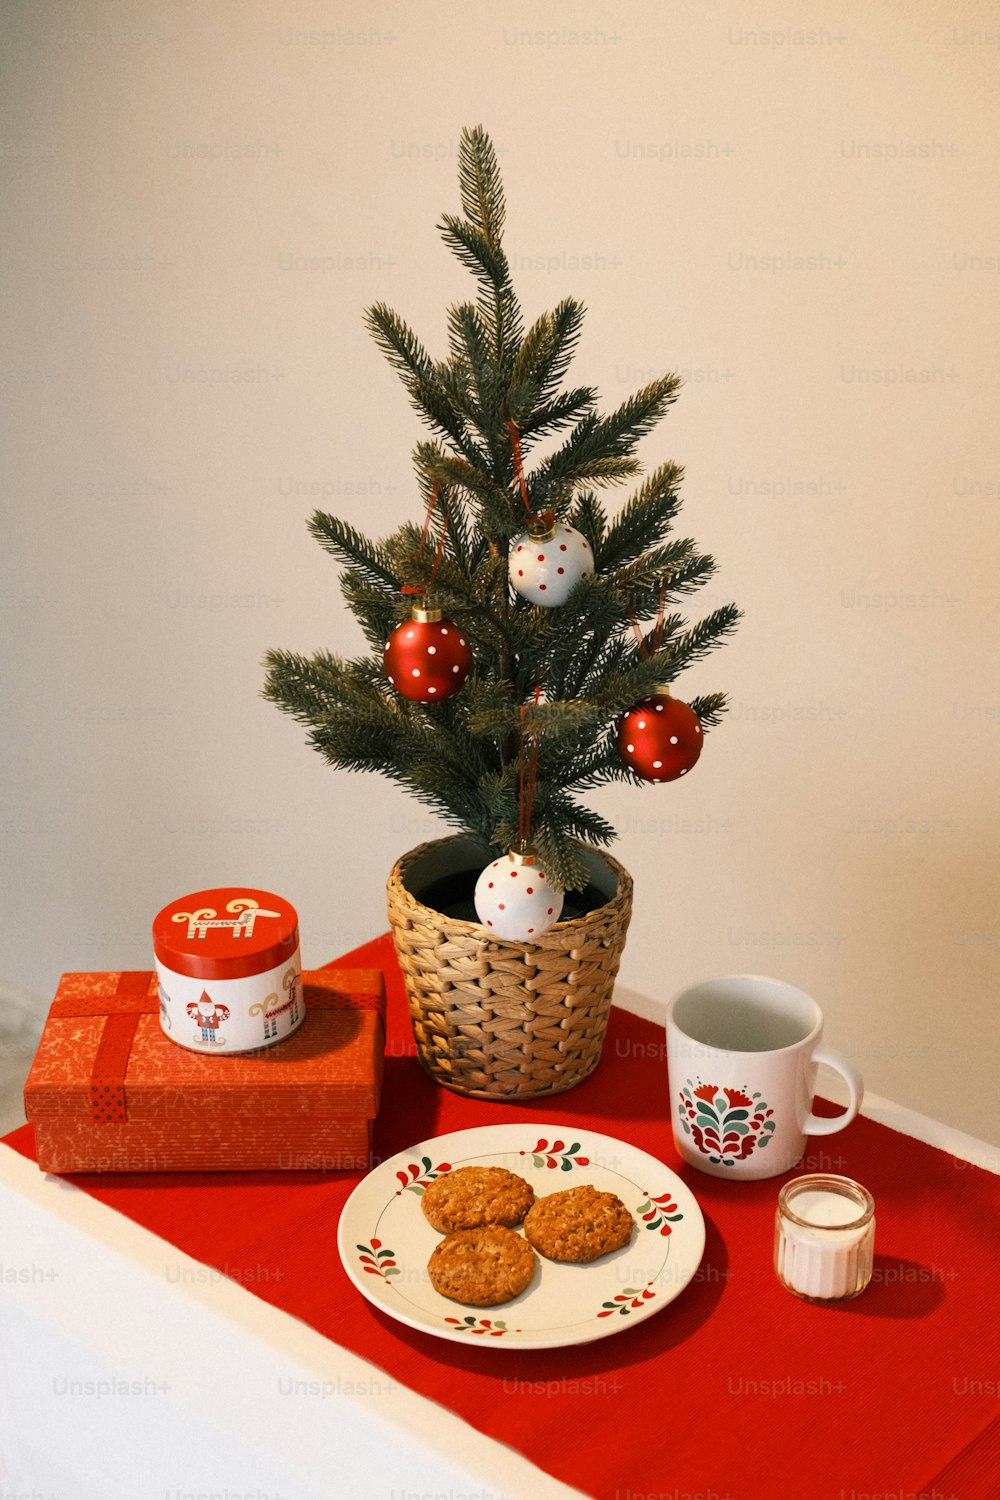 Un piccolo albero di Natale si siede accanto a un piatto di biscotti